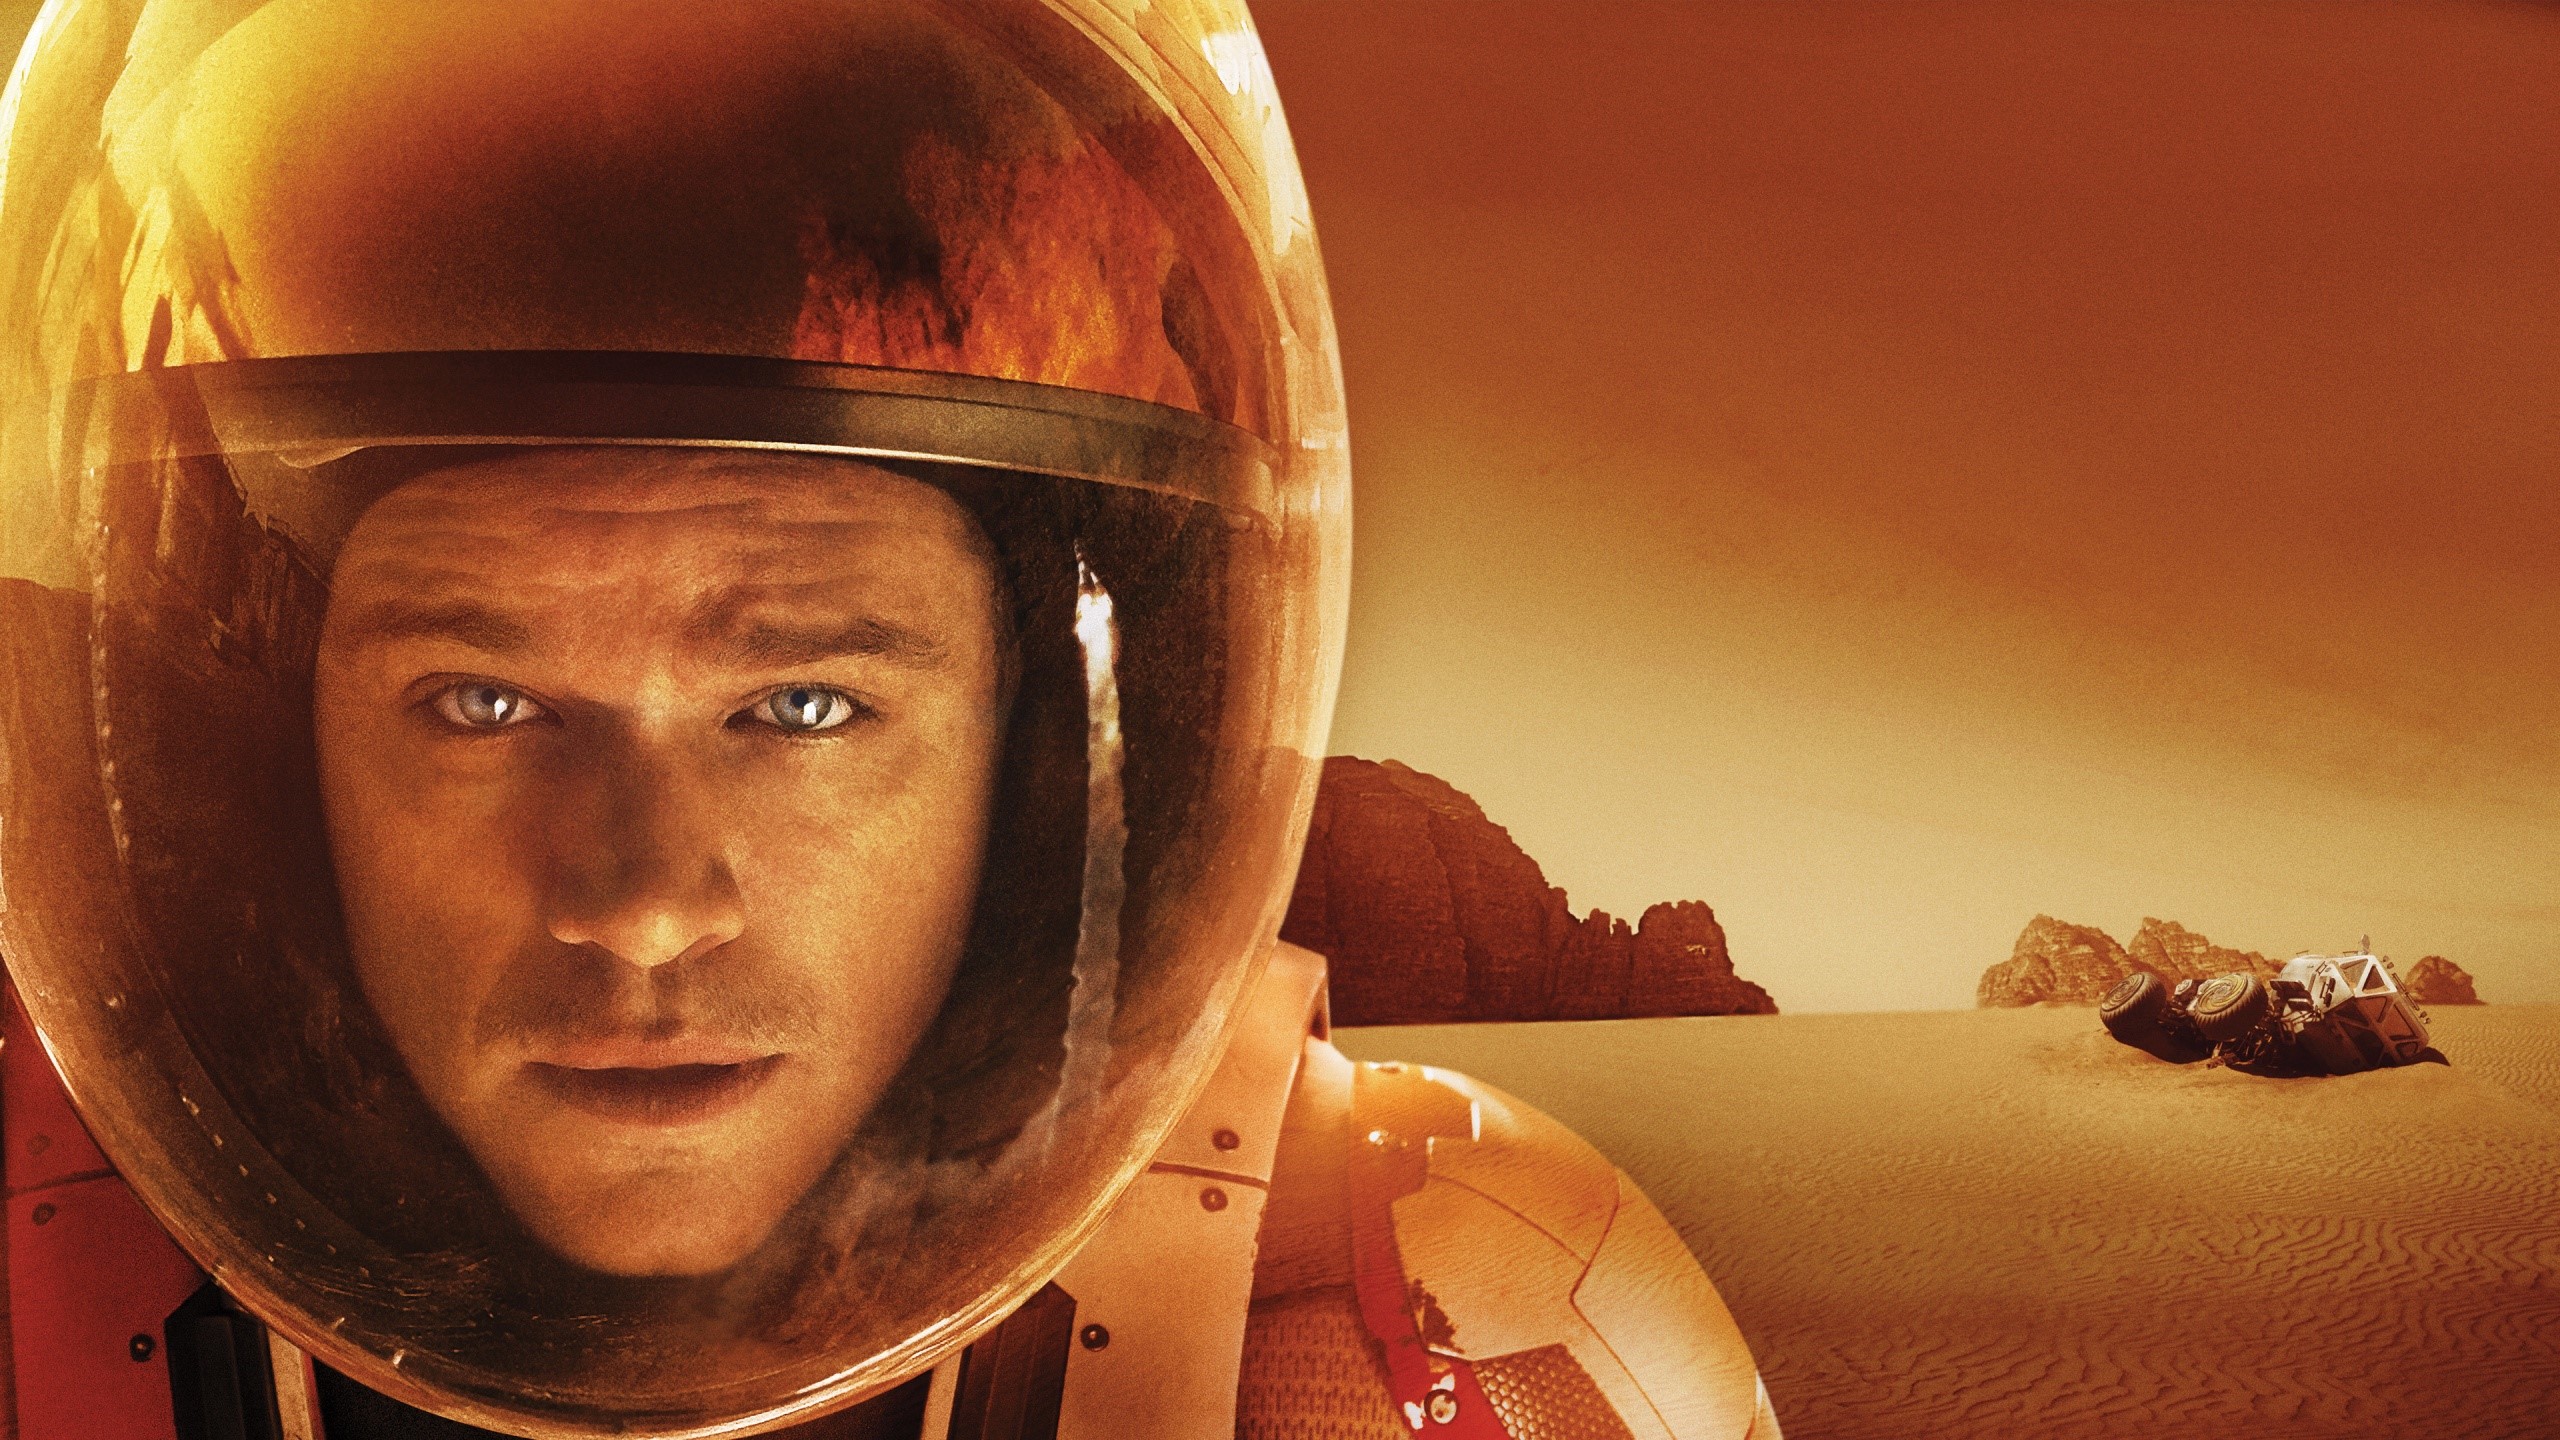 Fondos de pantalla Película El marciano de Ridley Scooy